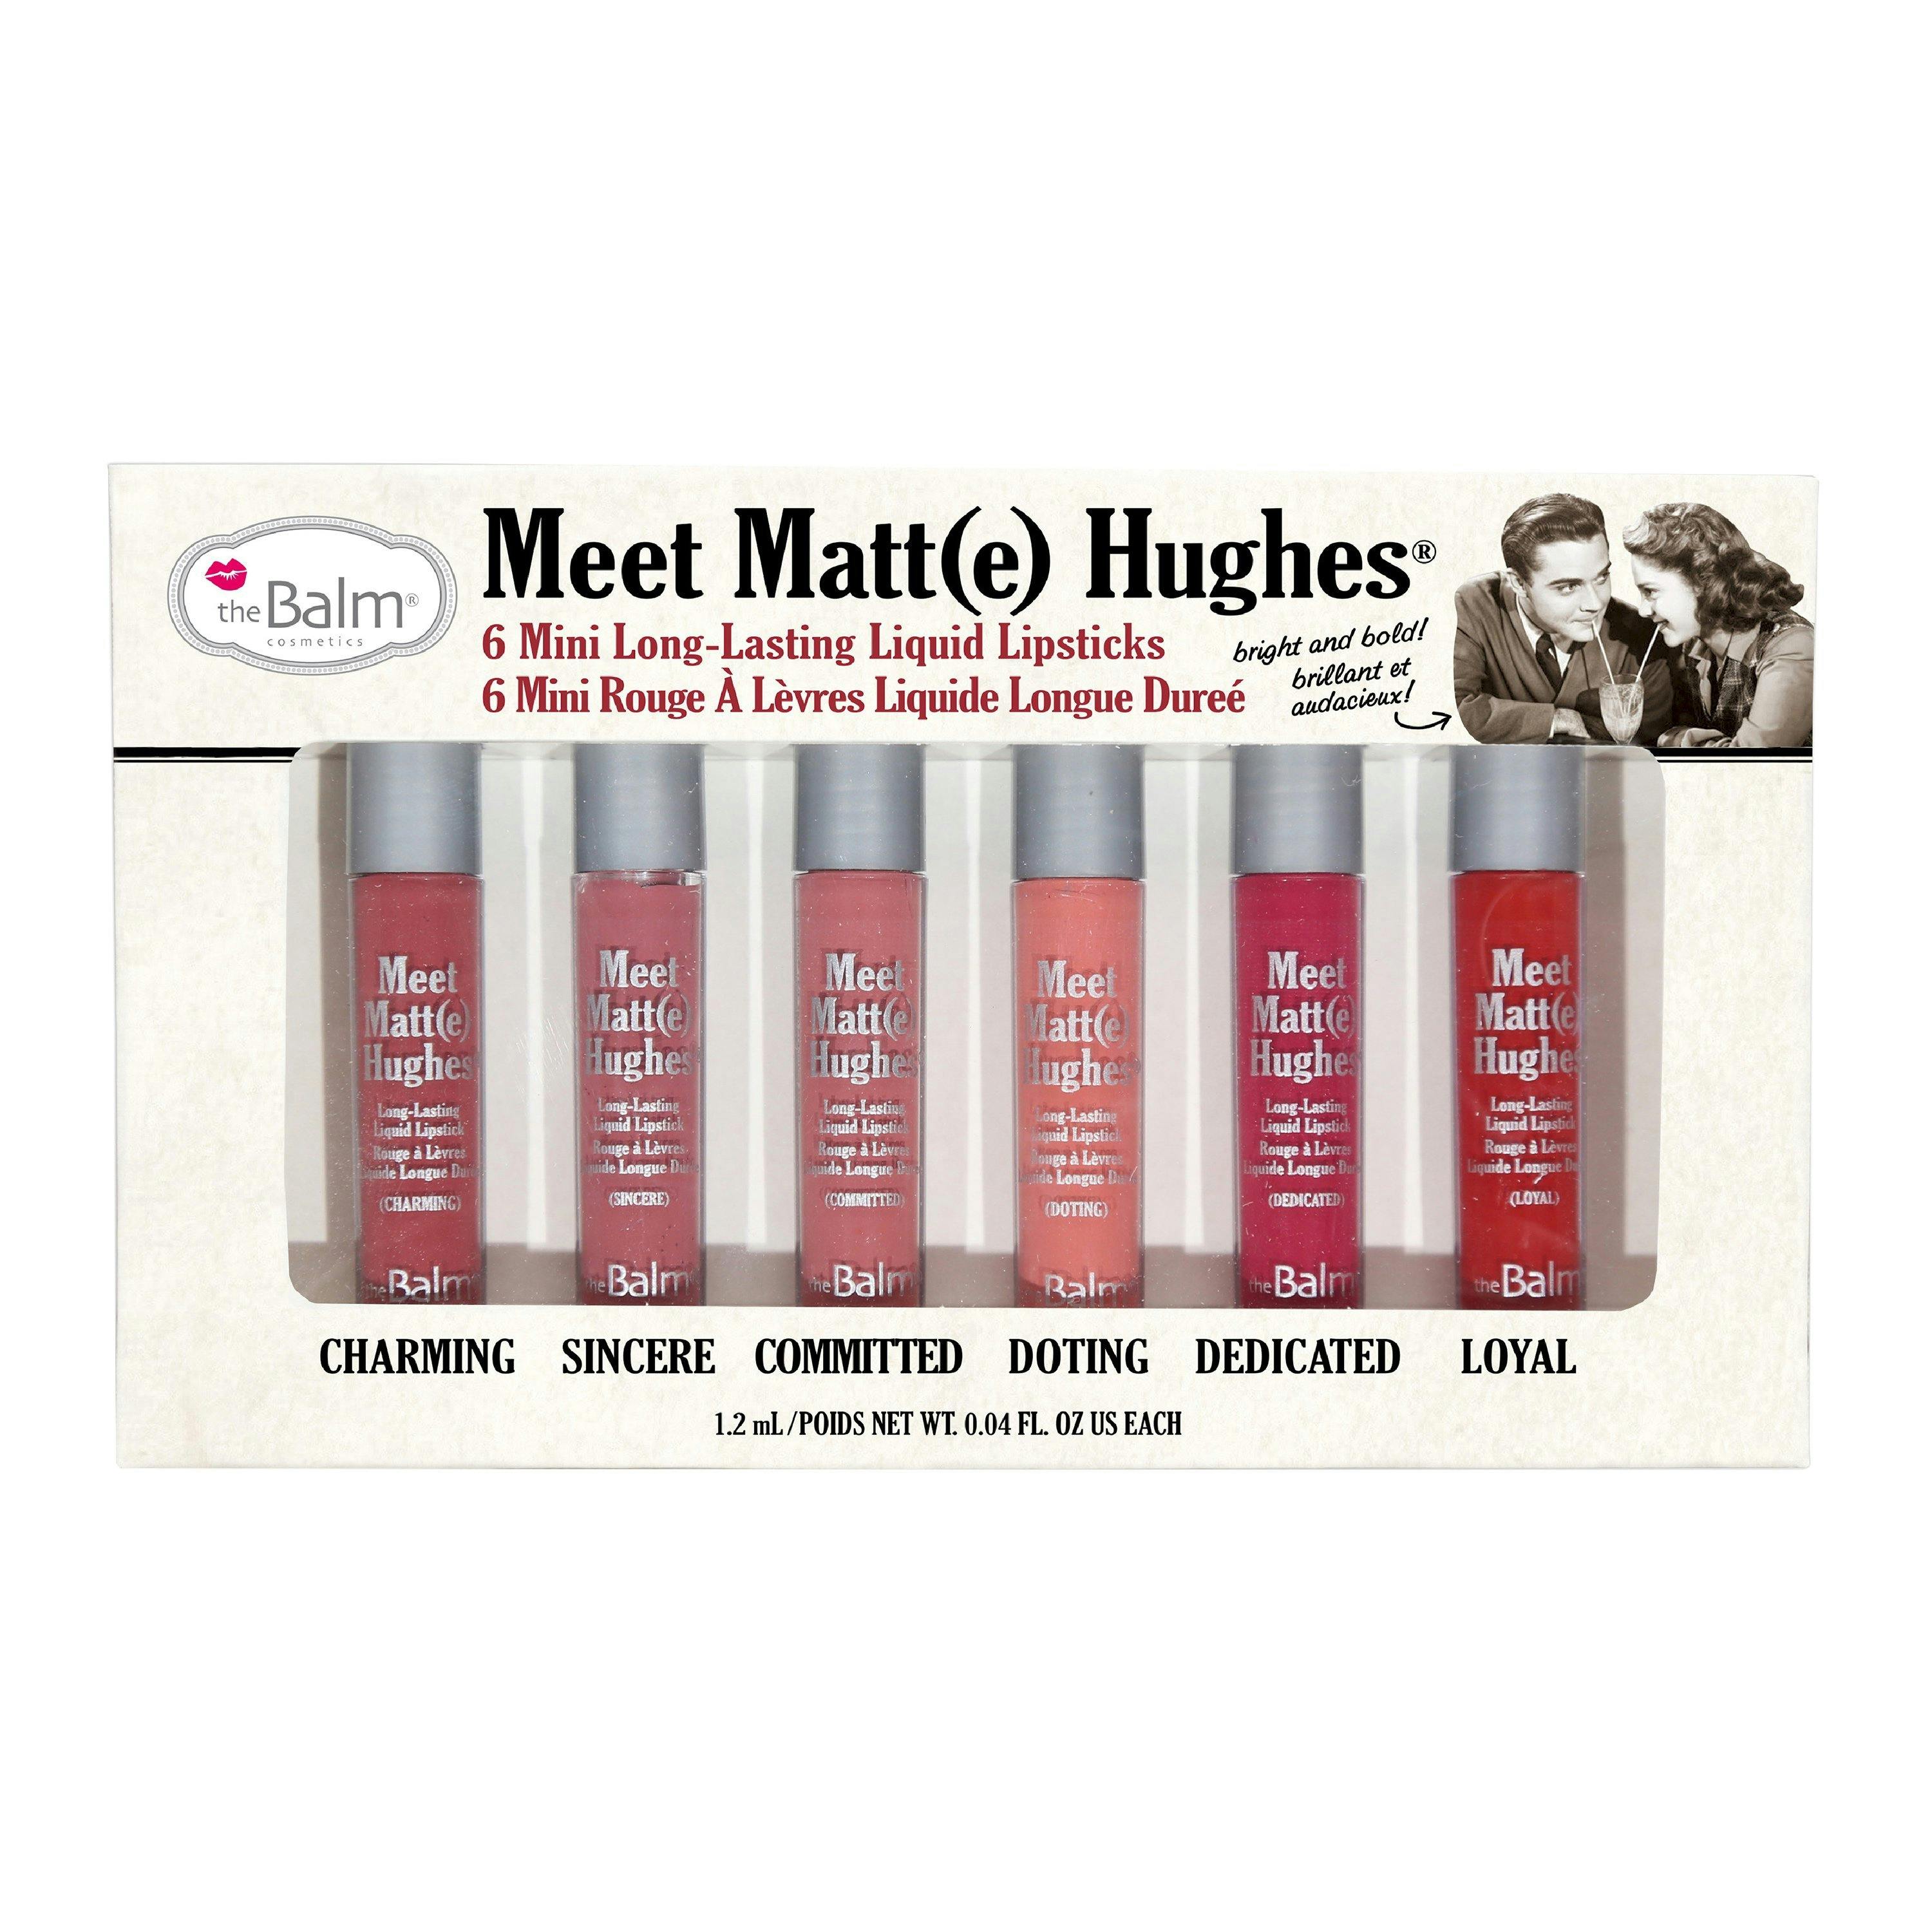 The Balm Meet Matt(e) Hughes Volume 1 Mini Lipstick Kit 6 x 1,2 ml